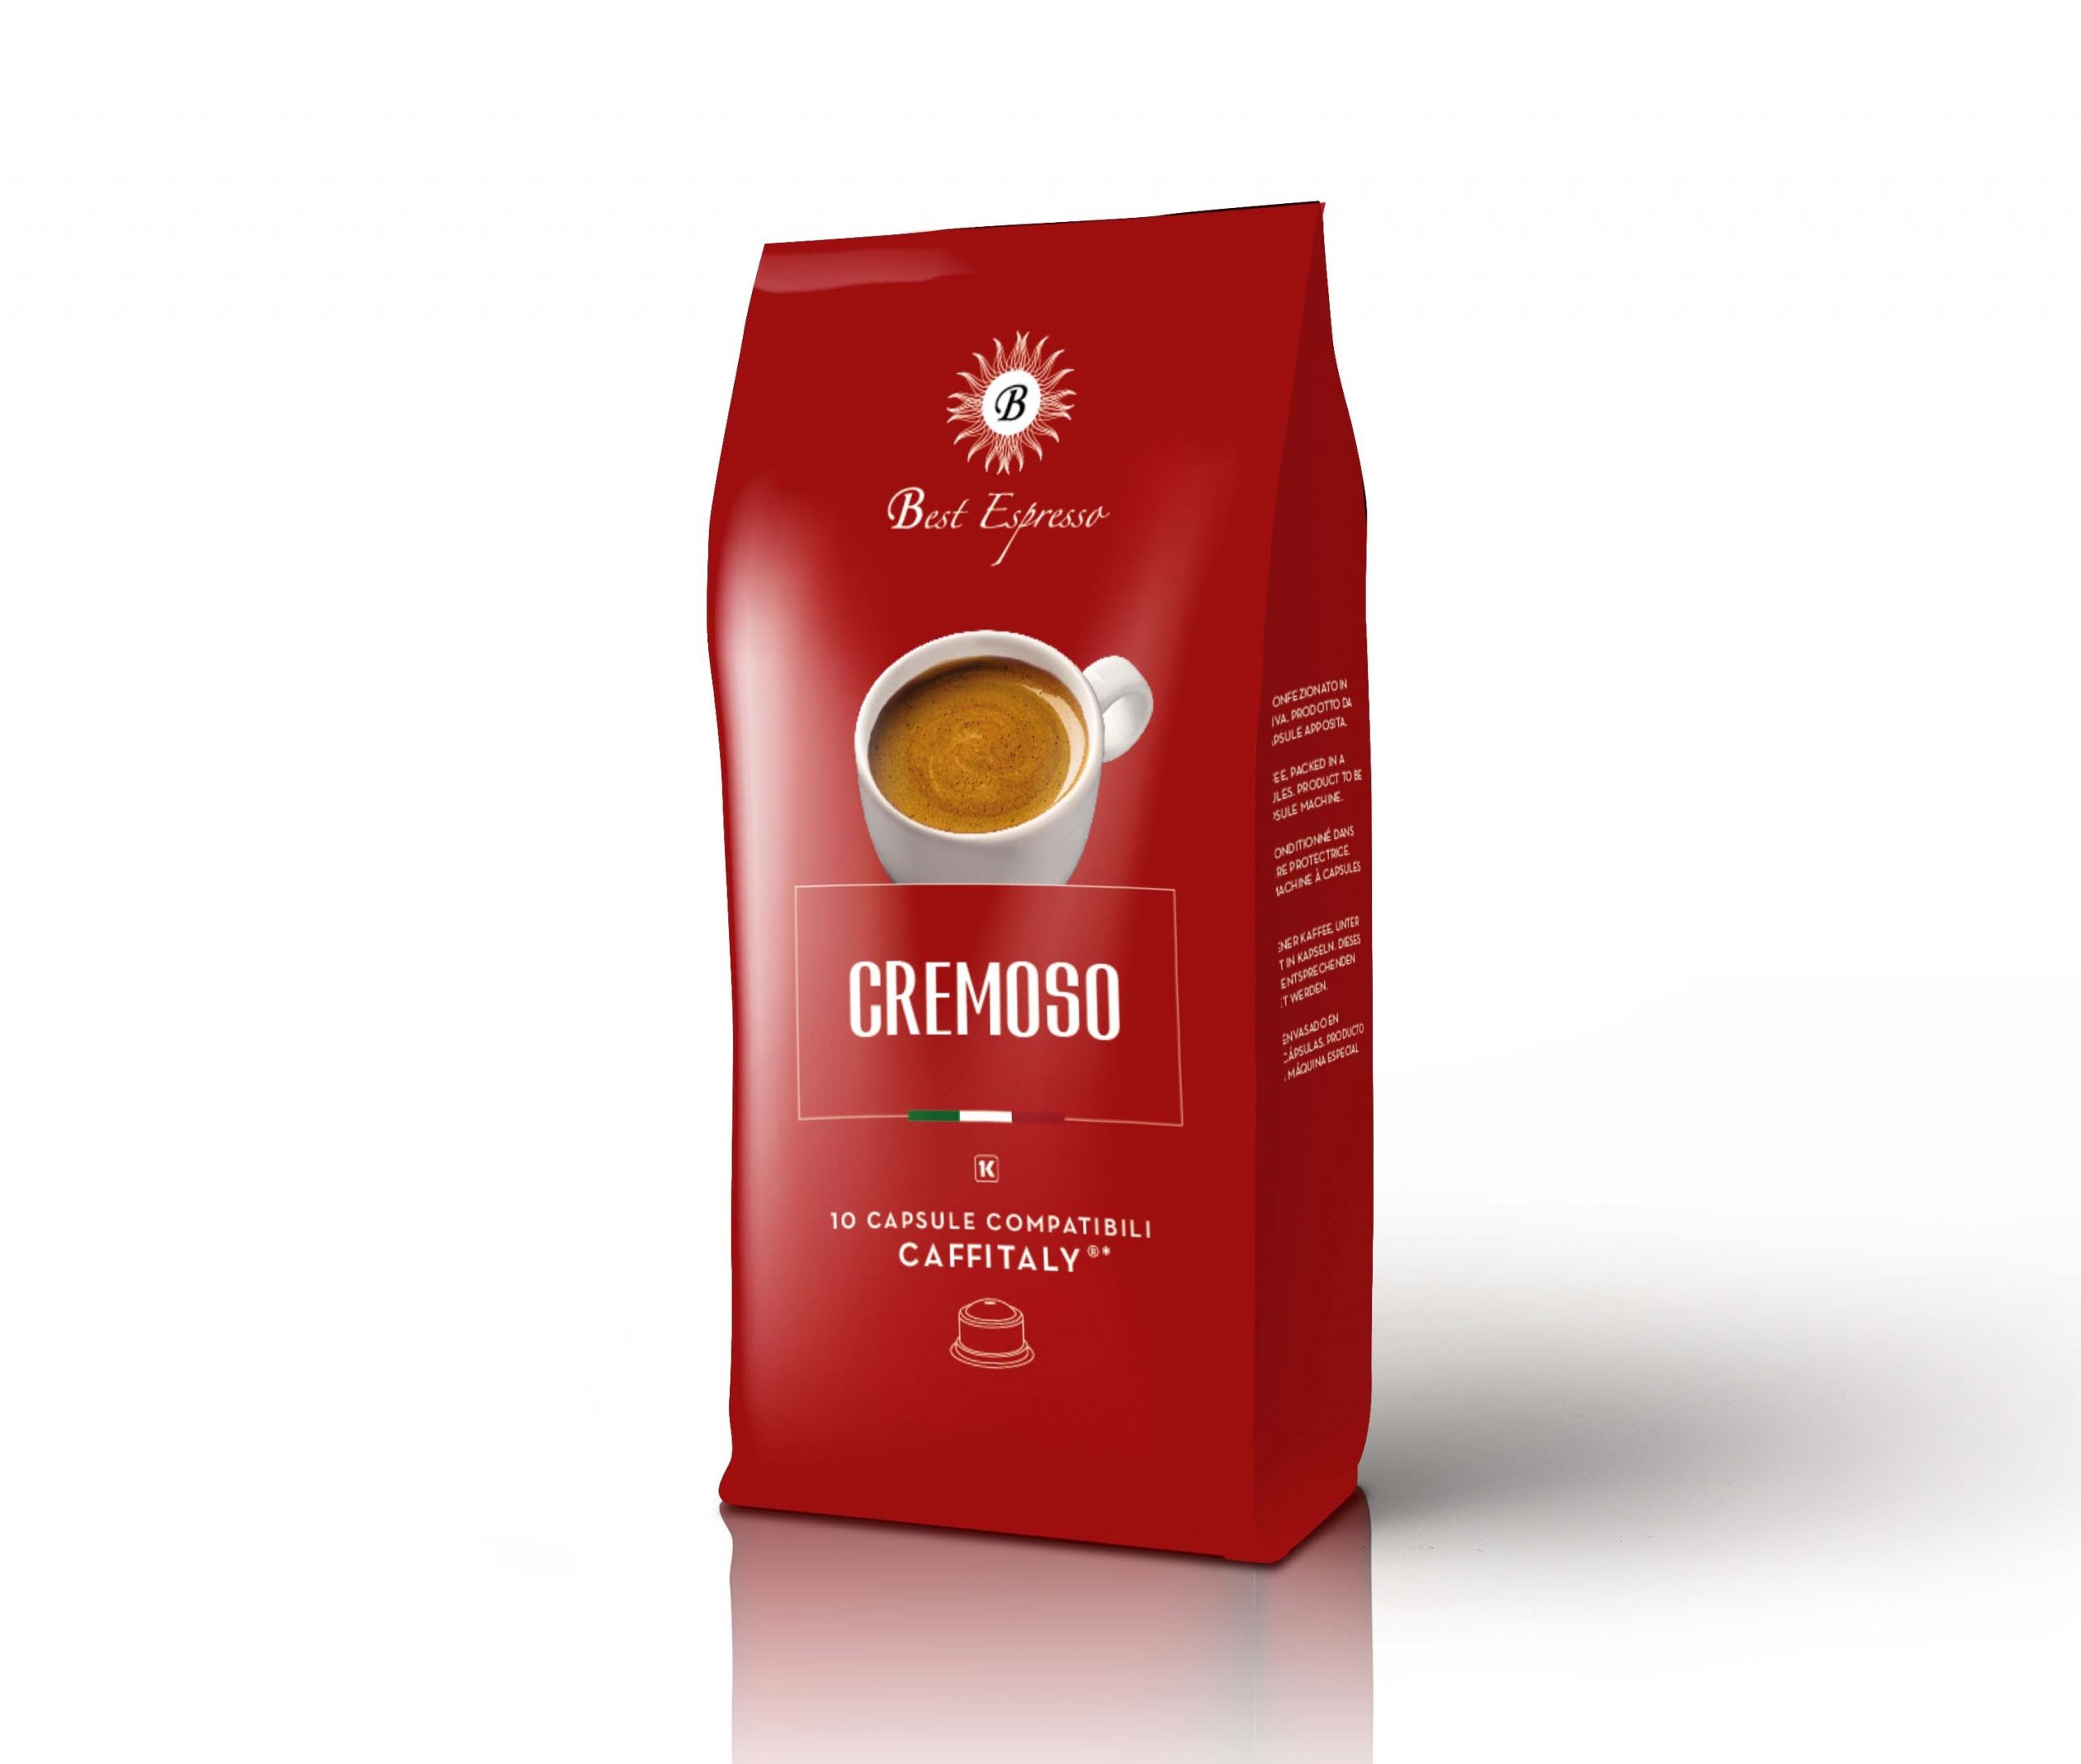 Caffè Cremoso - Best Espresso ONLINE